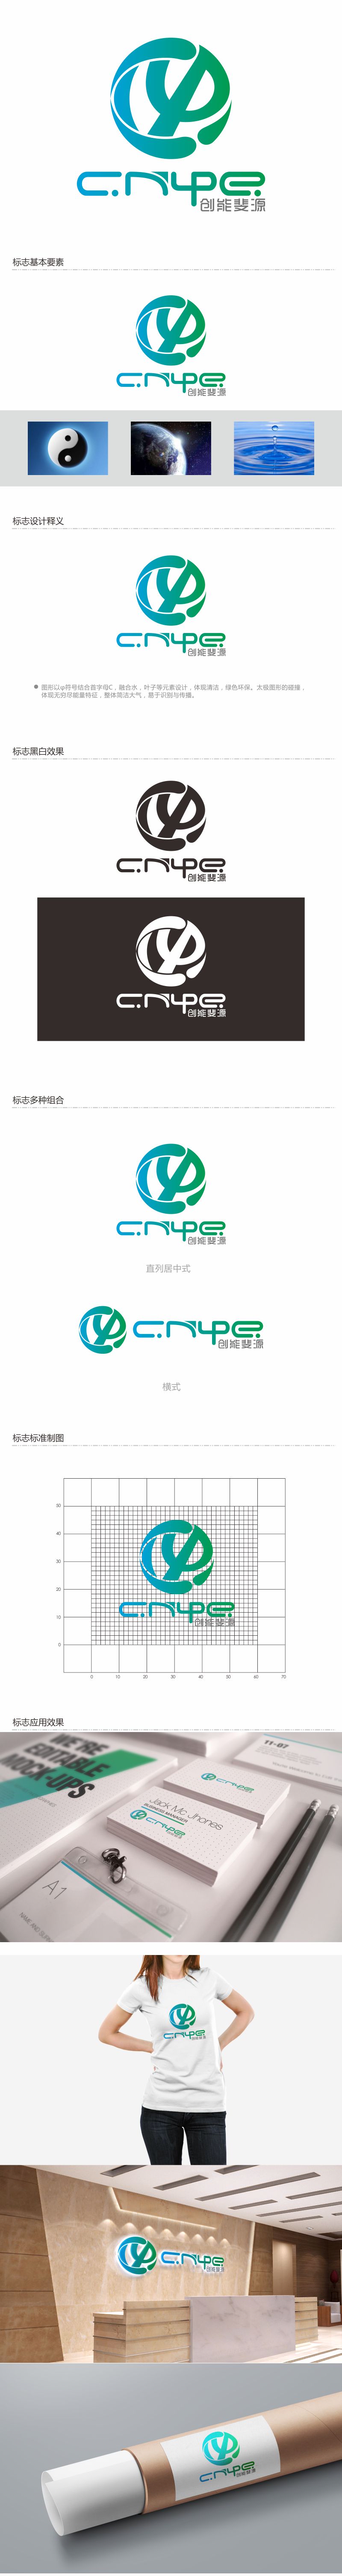 何嘉健的中文：创能斐源；英文：cnφe energy或者cnphie energylogo设计